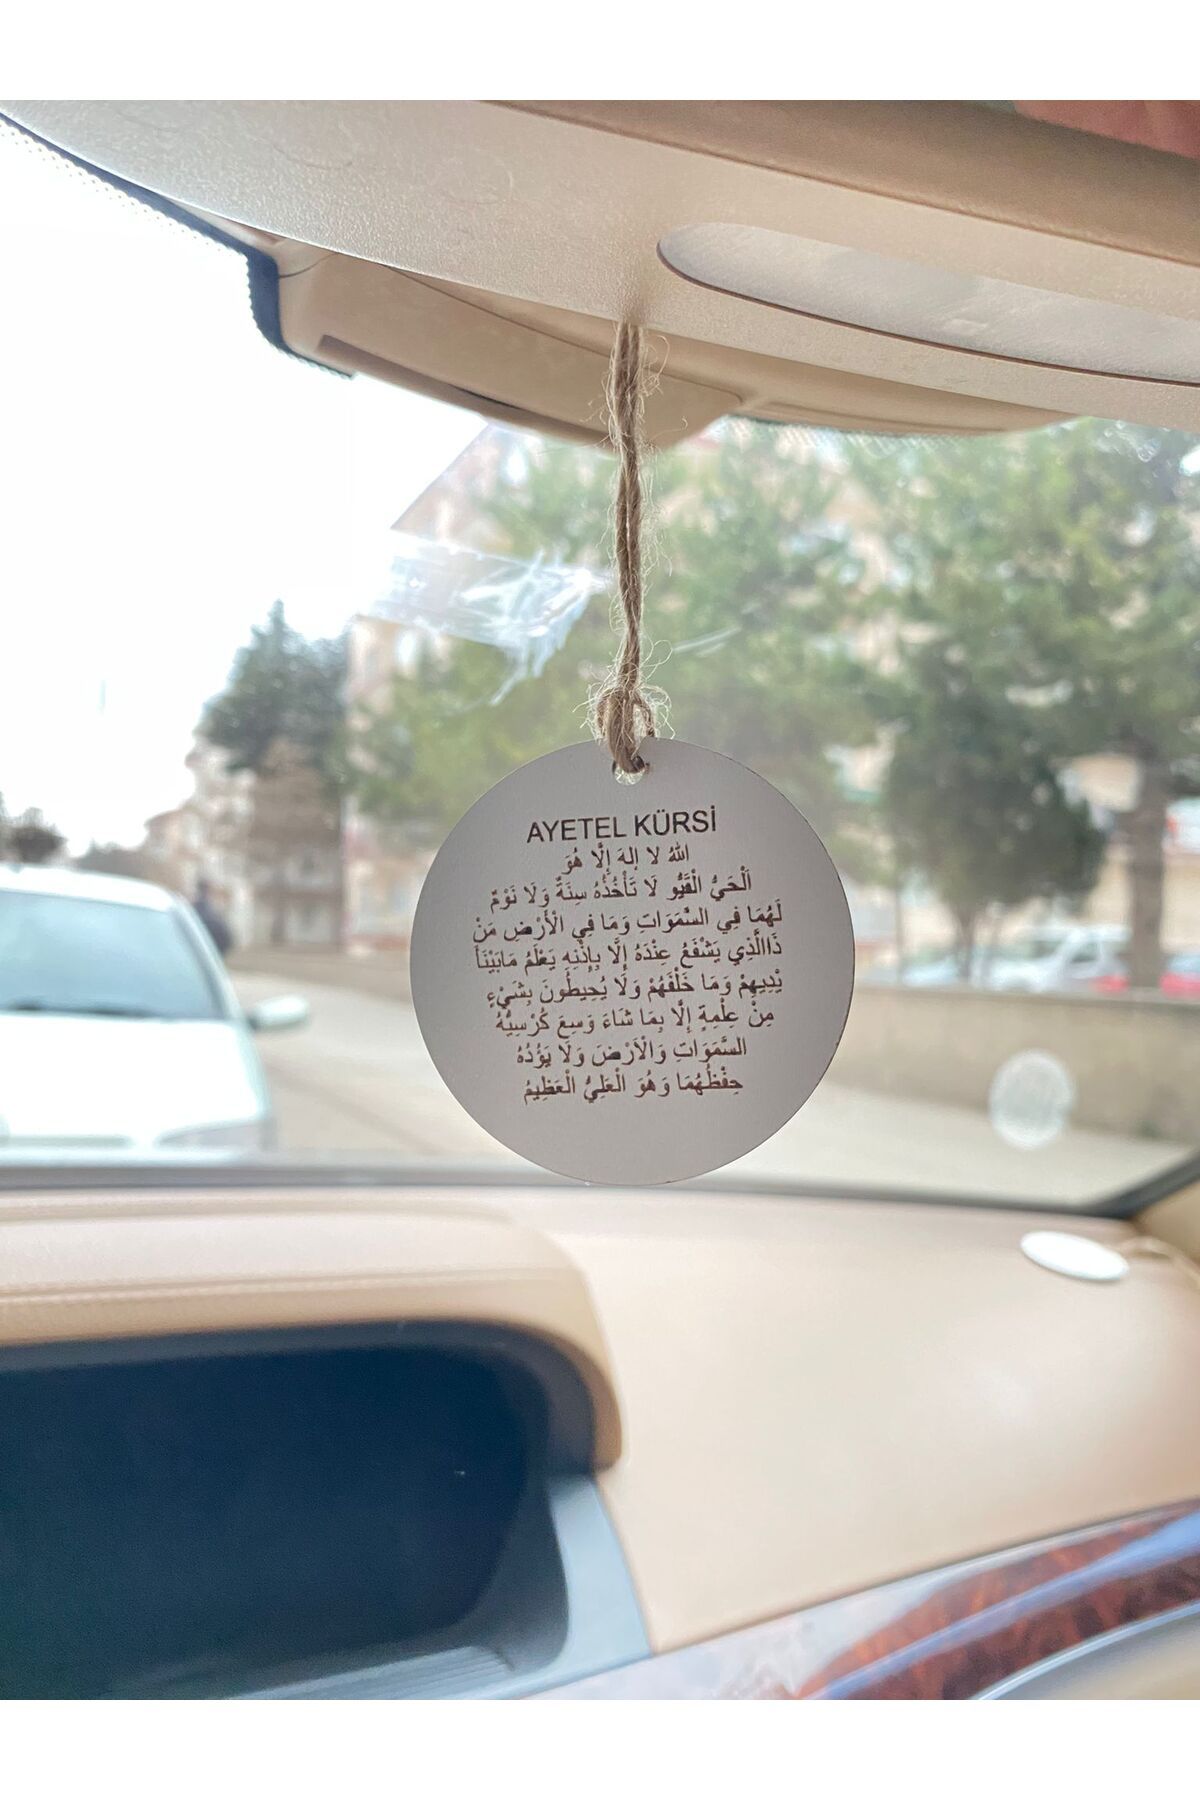 Reyener Ahşap Çift Taraflı Araba Dikiz Aynası Süsü Araç Içi Aksesuarı Ayet Kürsi Ve Nazar Dualı Araba Süsü